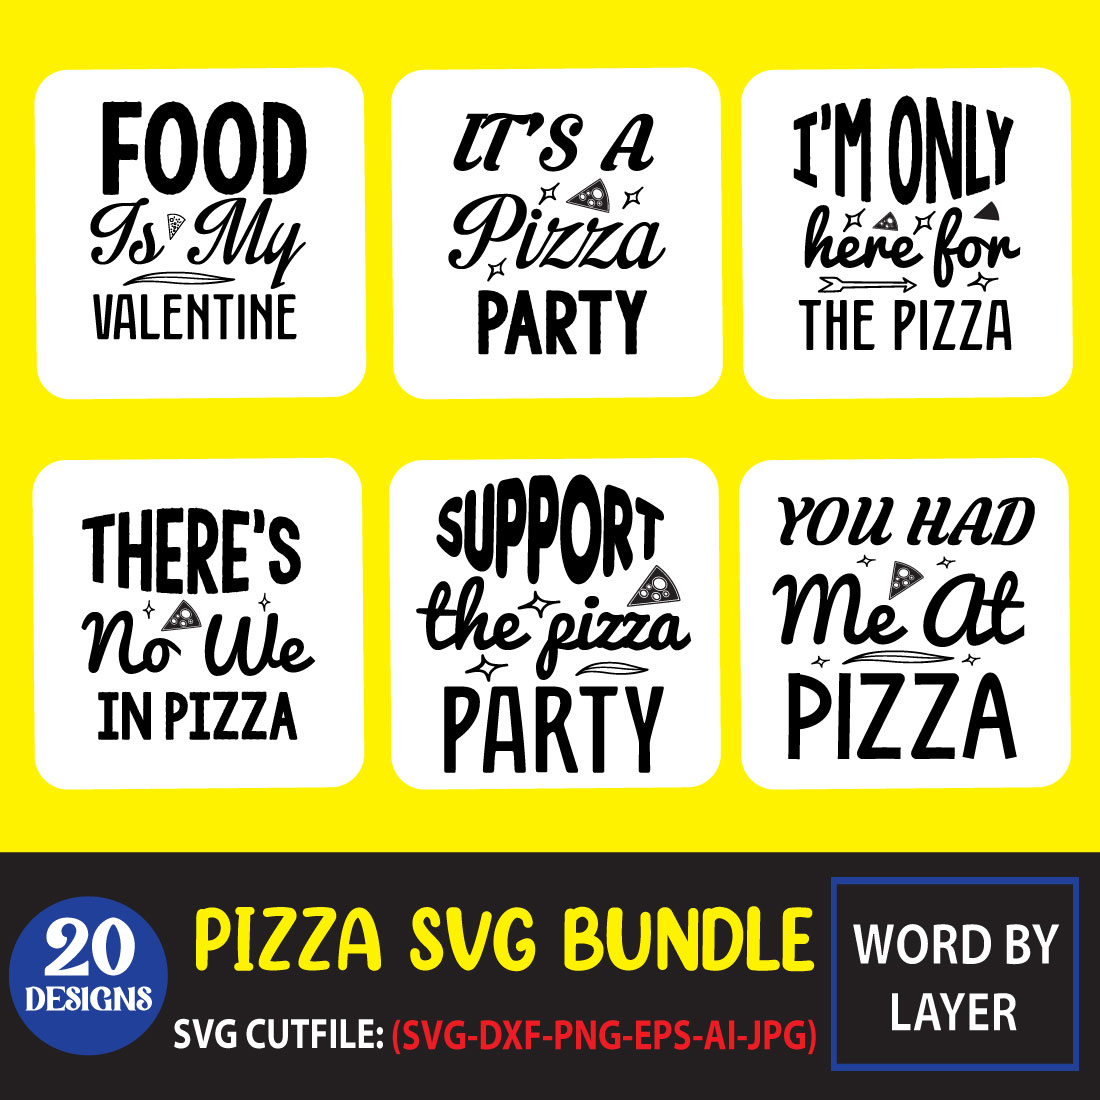 Pizza SVG Bundle main cover.